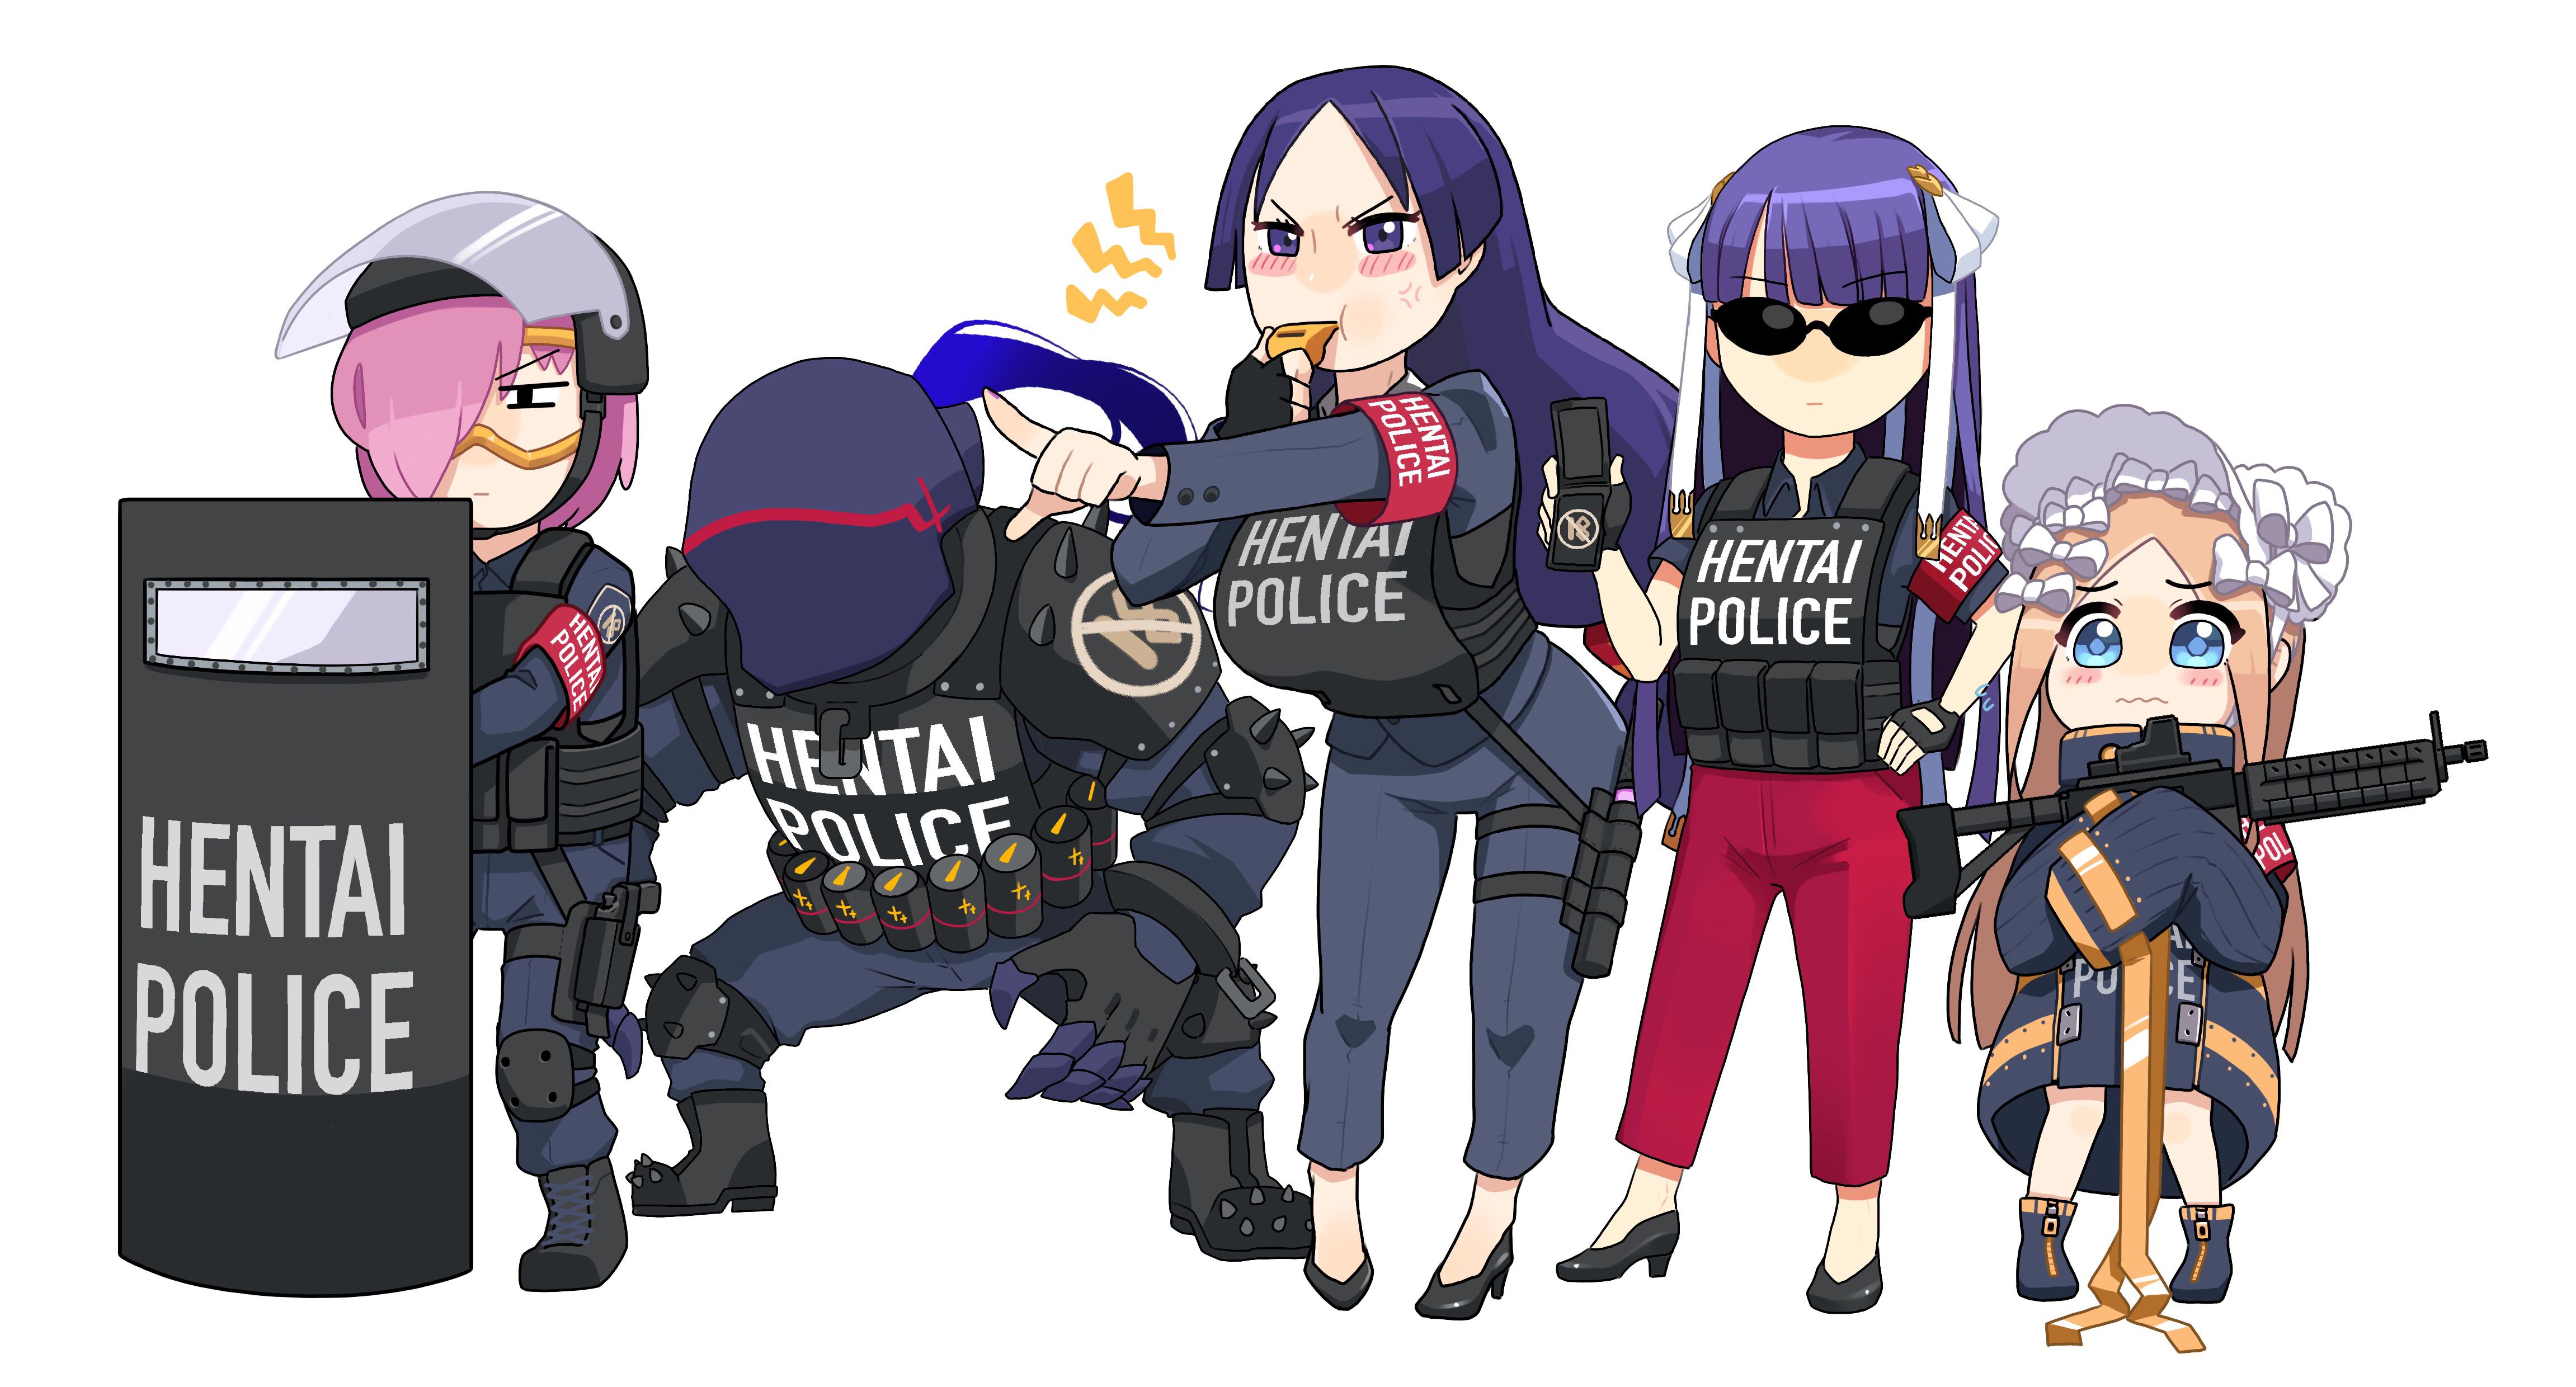 Anime Girls Anime Men Police White Background Humor 4605x2480